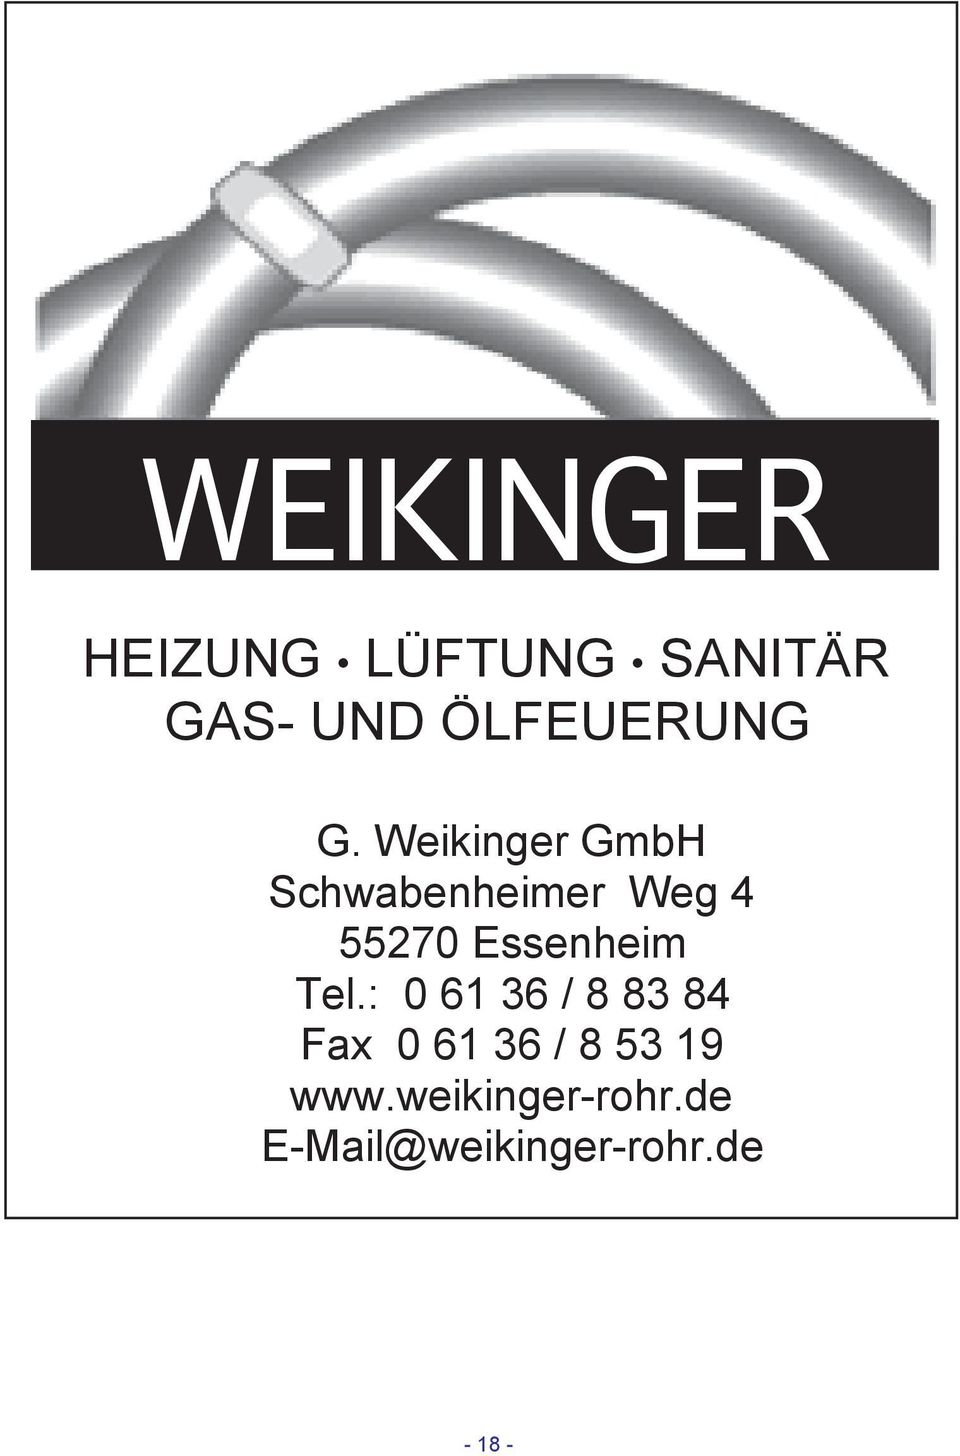 Weikinger GmbH Schwabenheimer Weg 4 55270 Essenheim